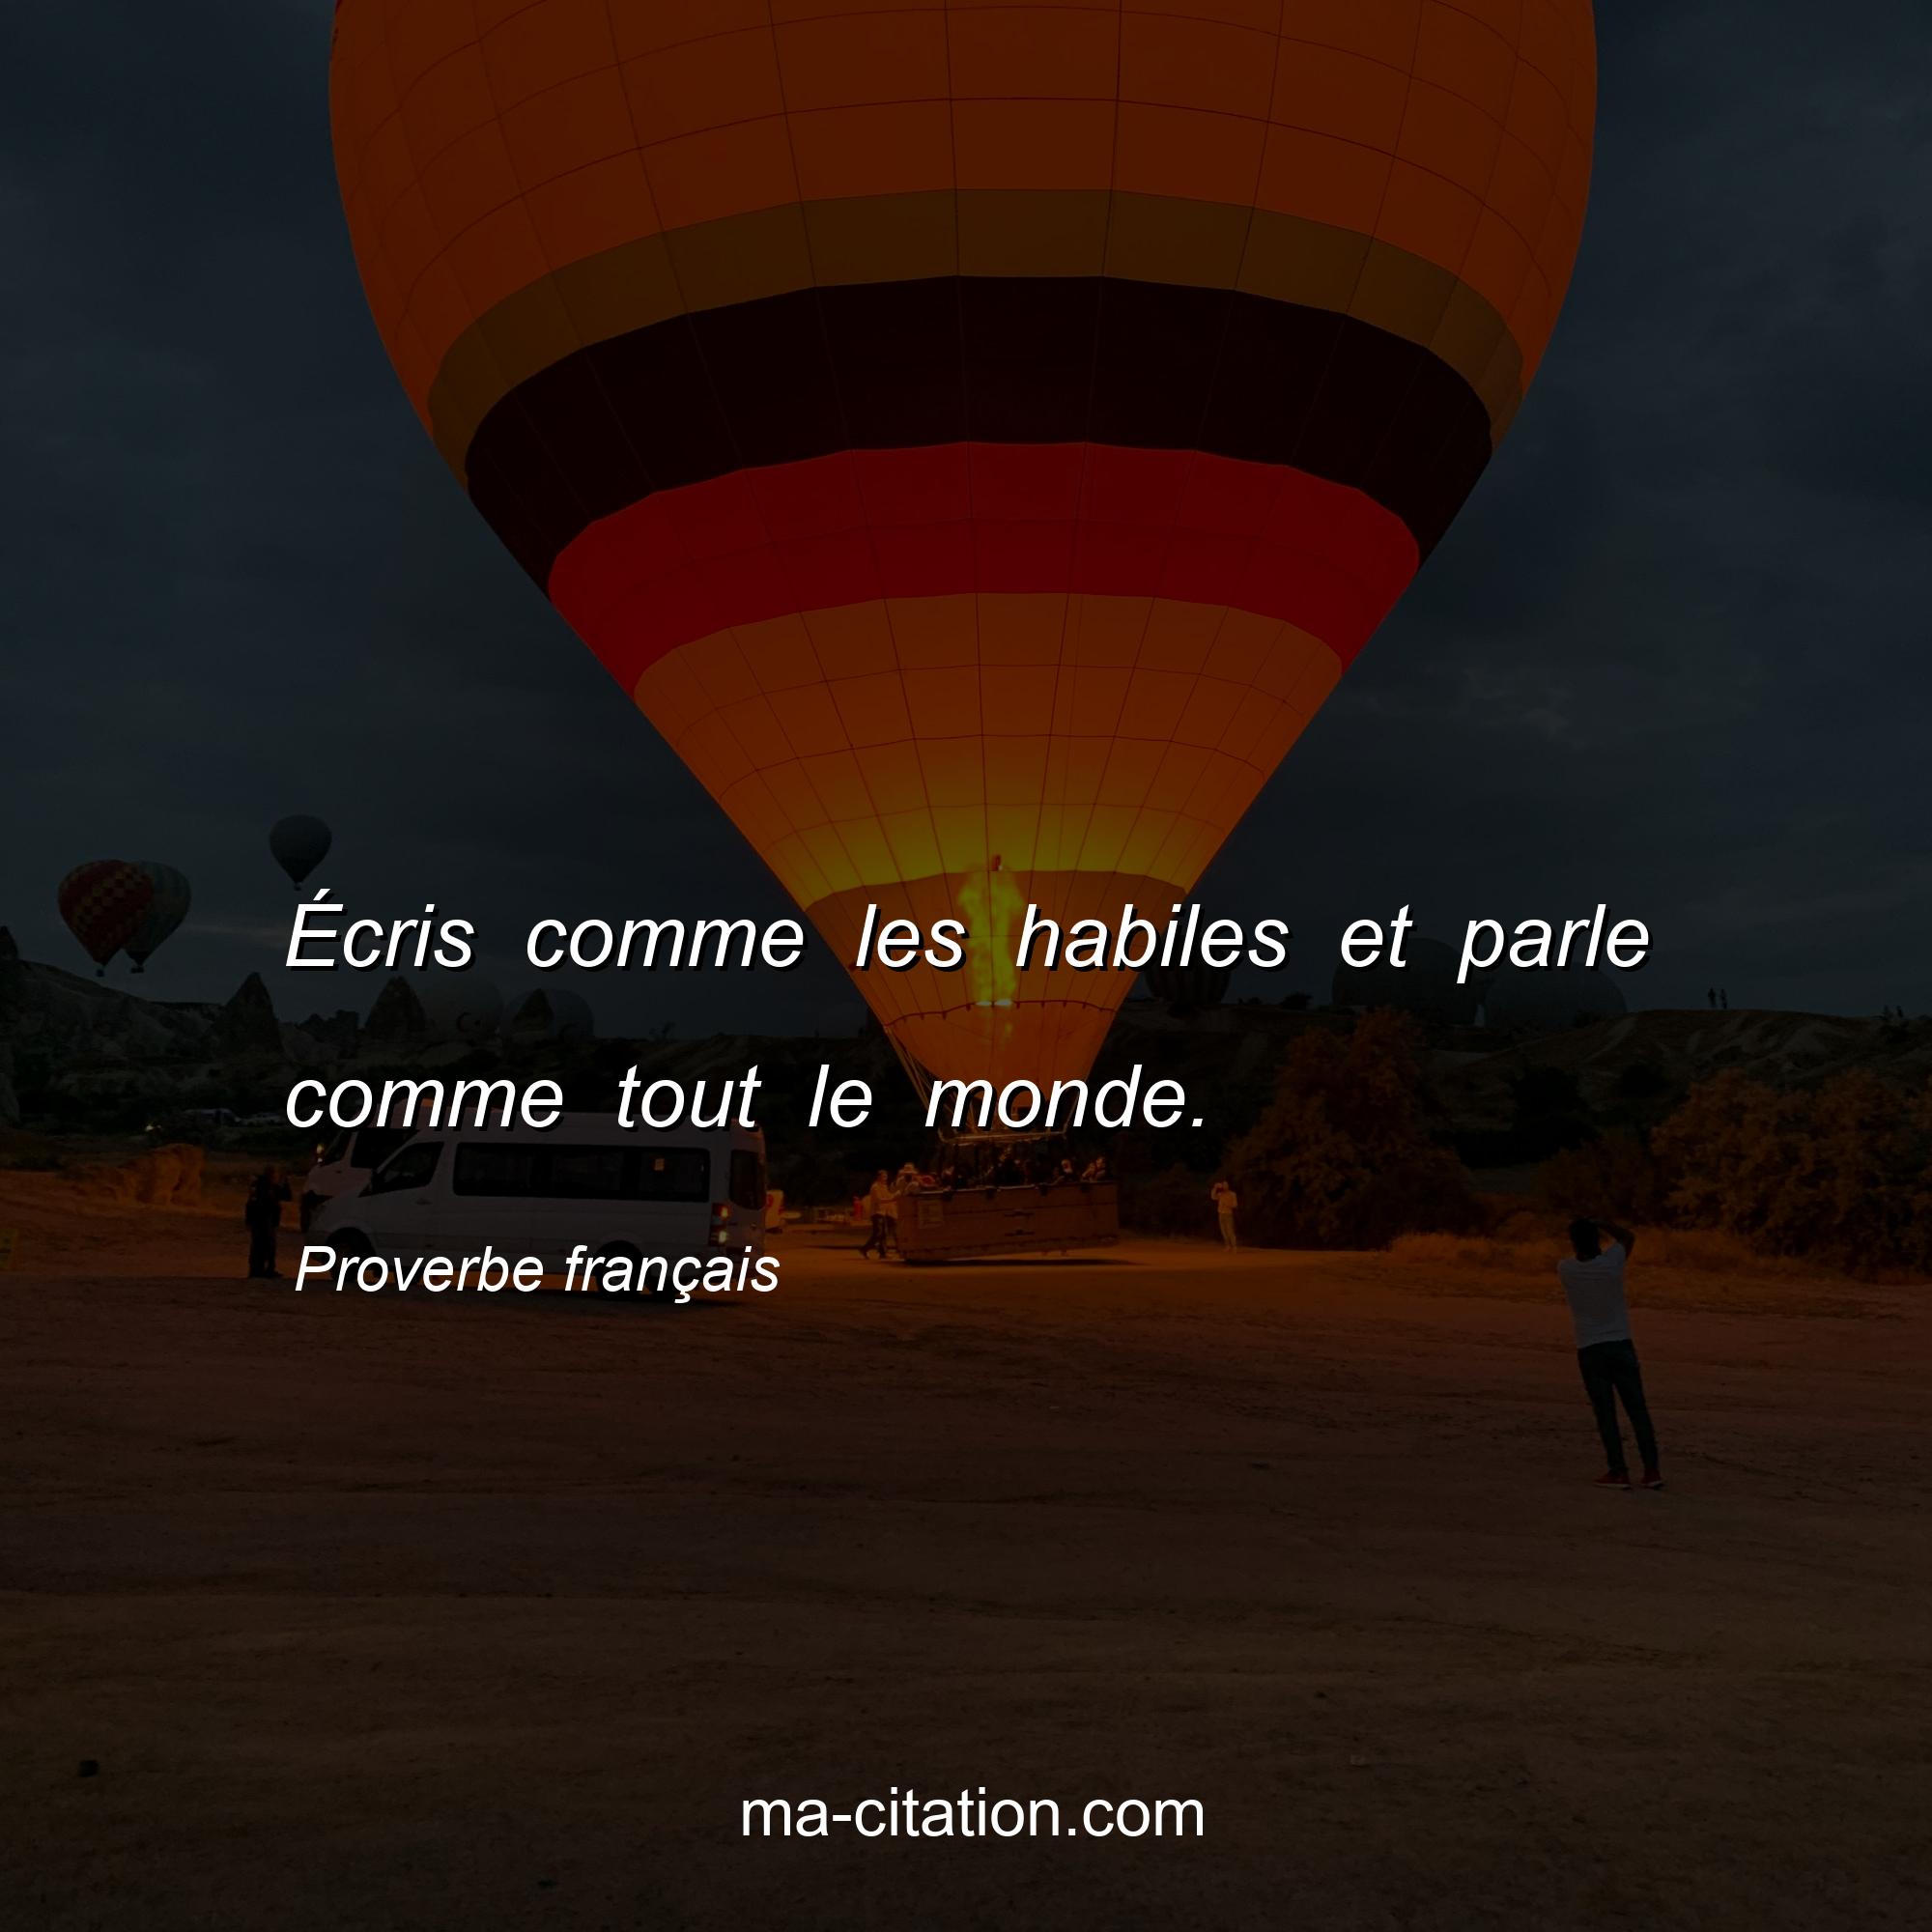 Proverbe français : Écris comme les habiles et parle comme tout le monde.